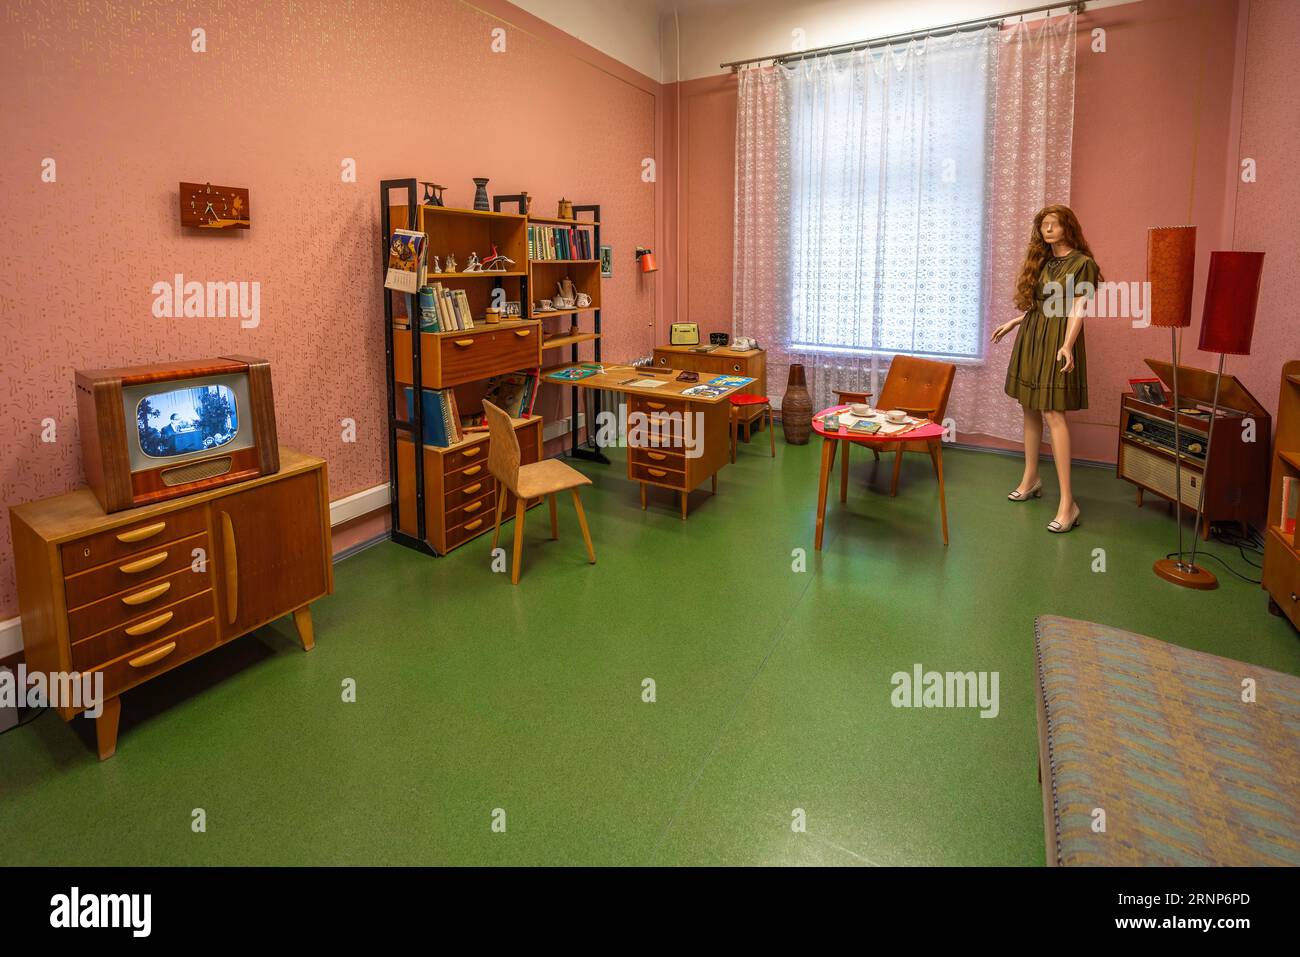 Living Room from Soviet Era in the 60s at National History Museum of Latvia - Riga, Latvia Stock Photo